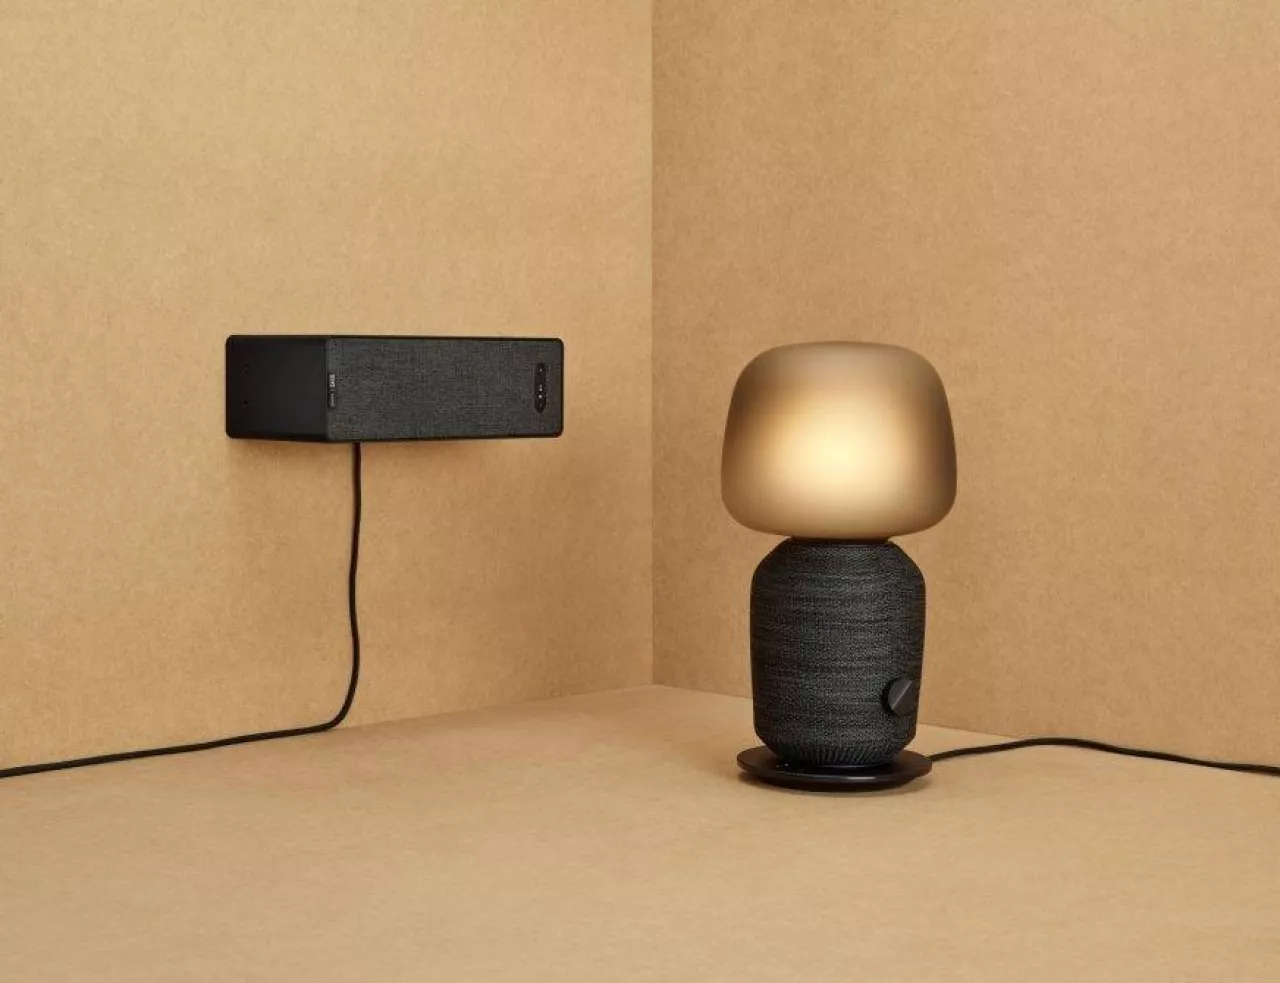 Inteligentna lampa biurkowa/głośnik Symfonisk oraz głośnik na półkę (Źródło: Ikea)